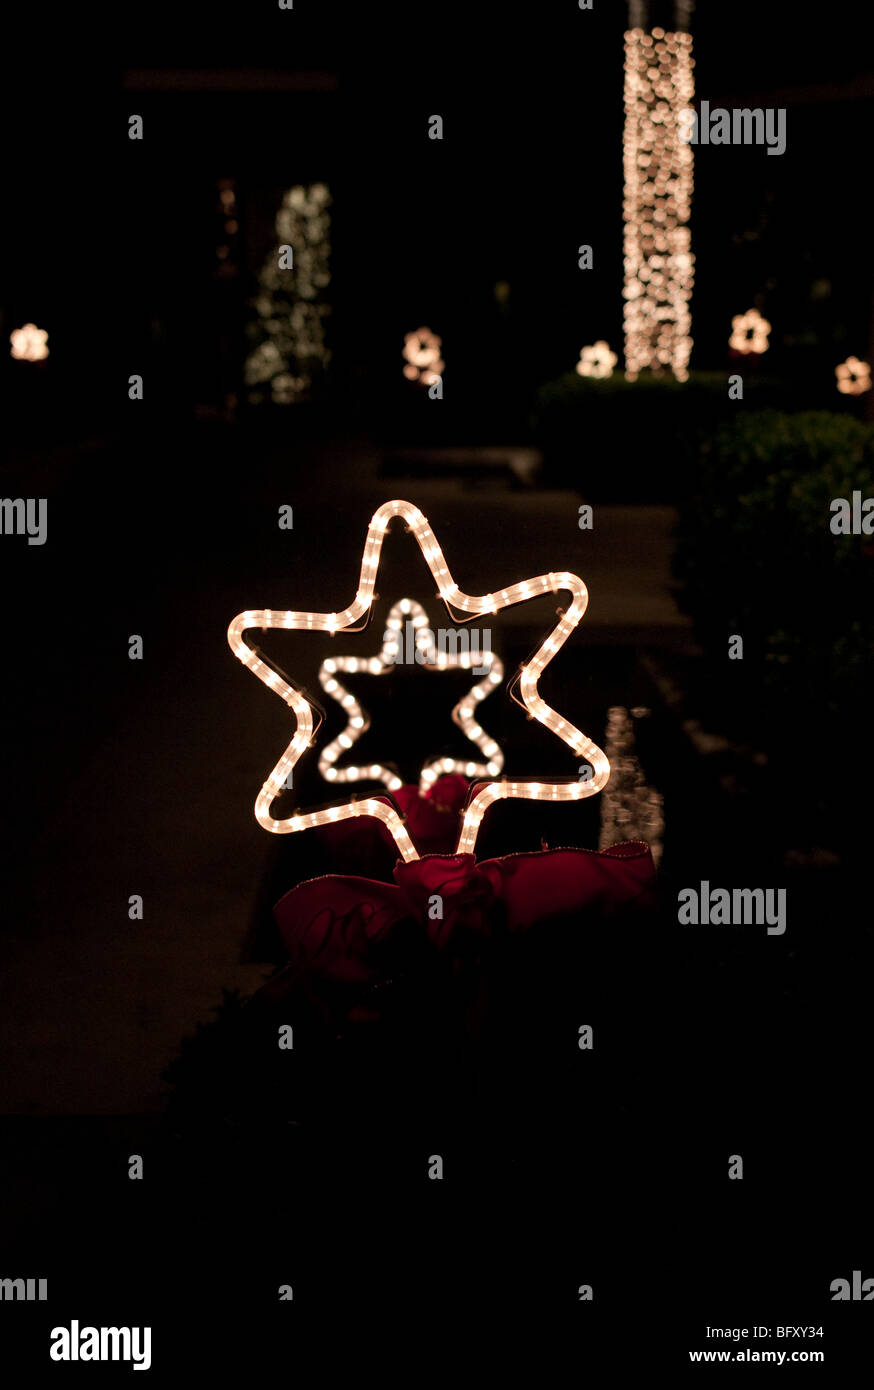 beleuchtete Sterne Weihnachtsbeleuchtung in einem Garten in der Nacht  Stockfotografie - Alamy